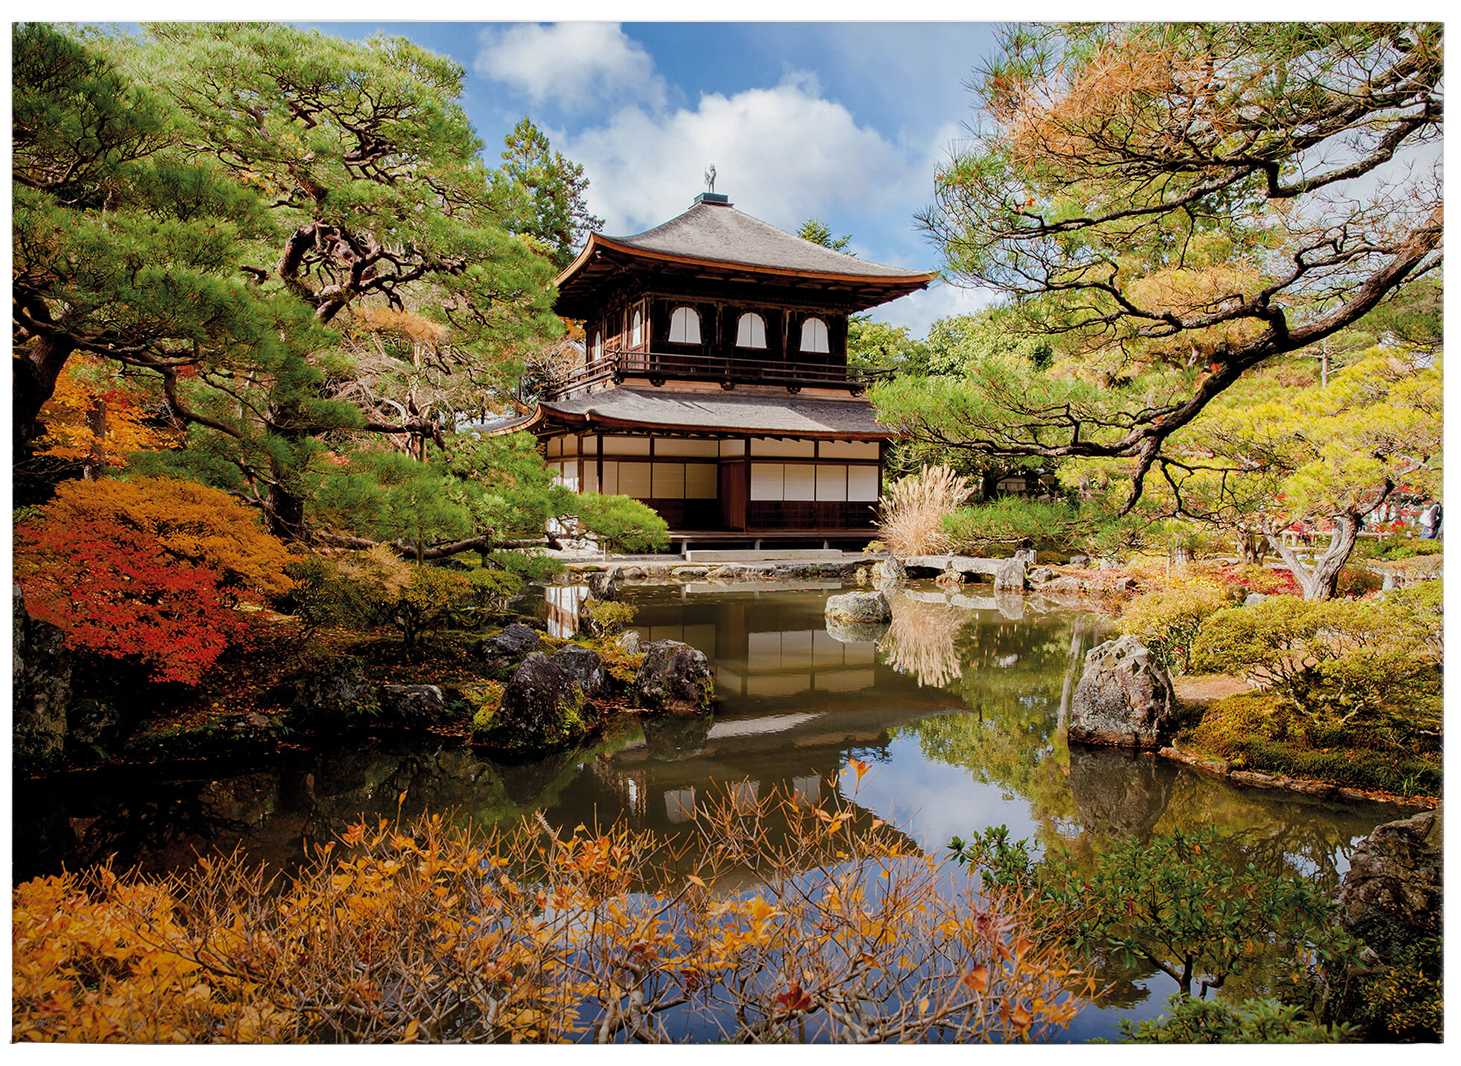             Cuadro Jardín japonés con pagoda - 0,70 m x 0,50 m
        